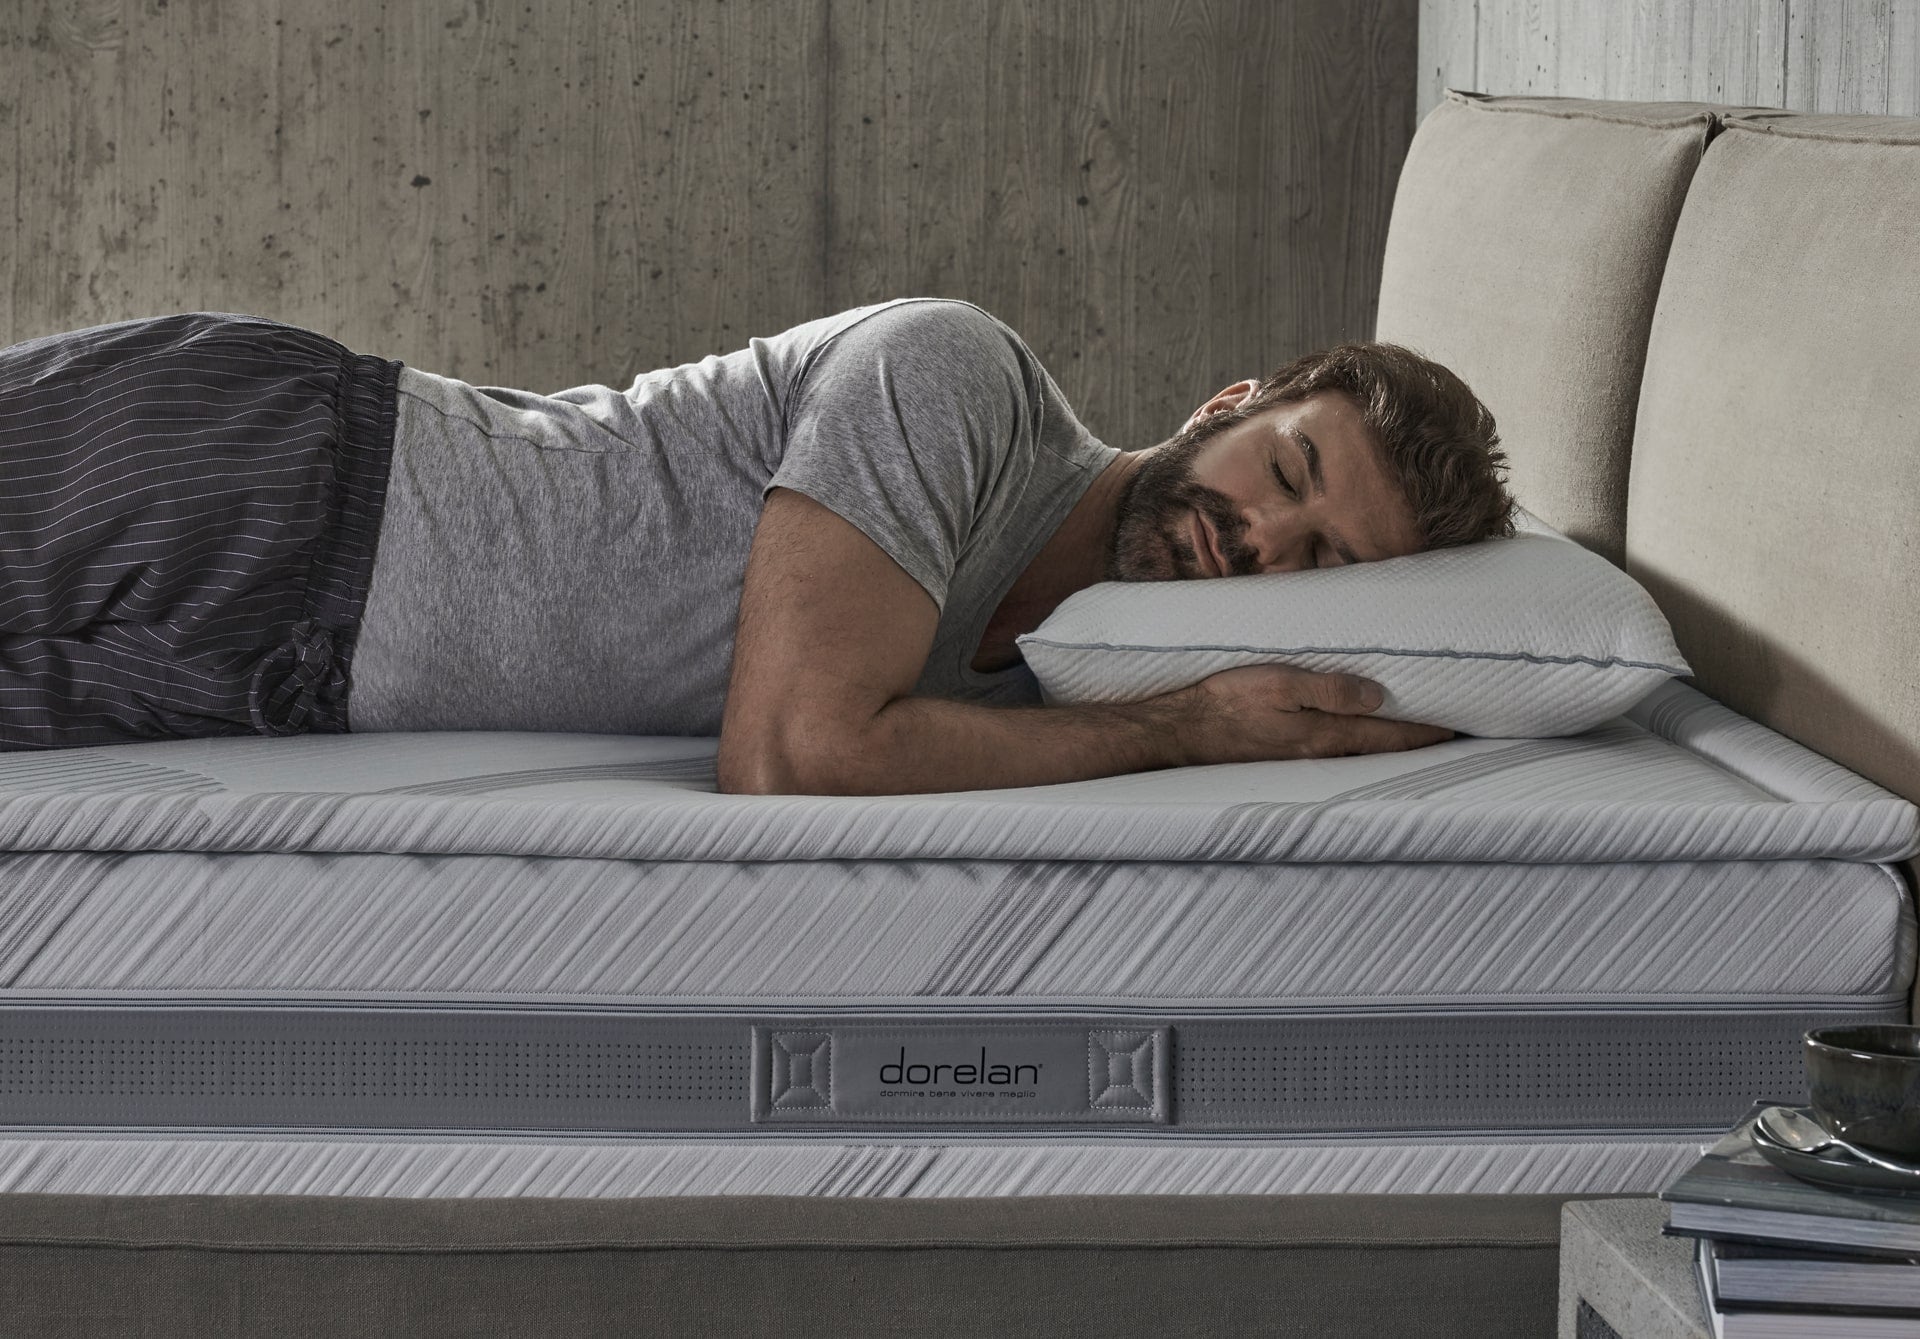 On a Dorelan bed, a man sleeps comfortably looking and sleeping sideways.